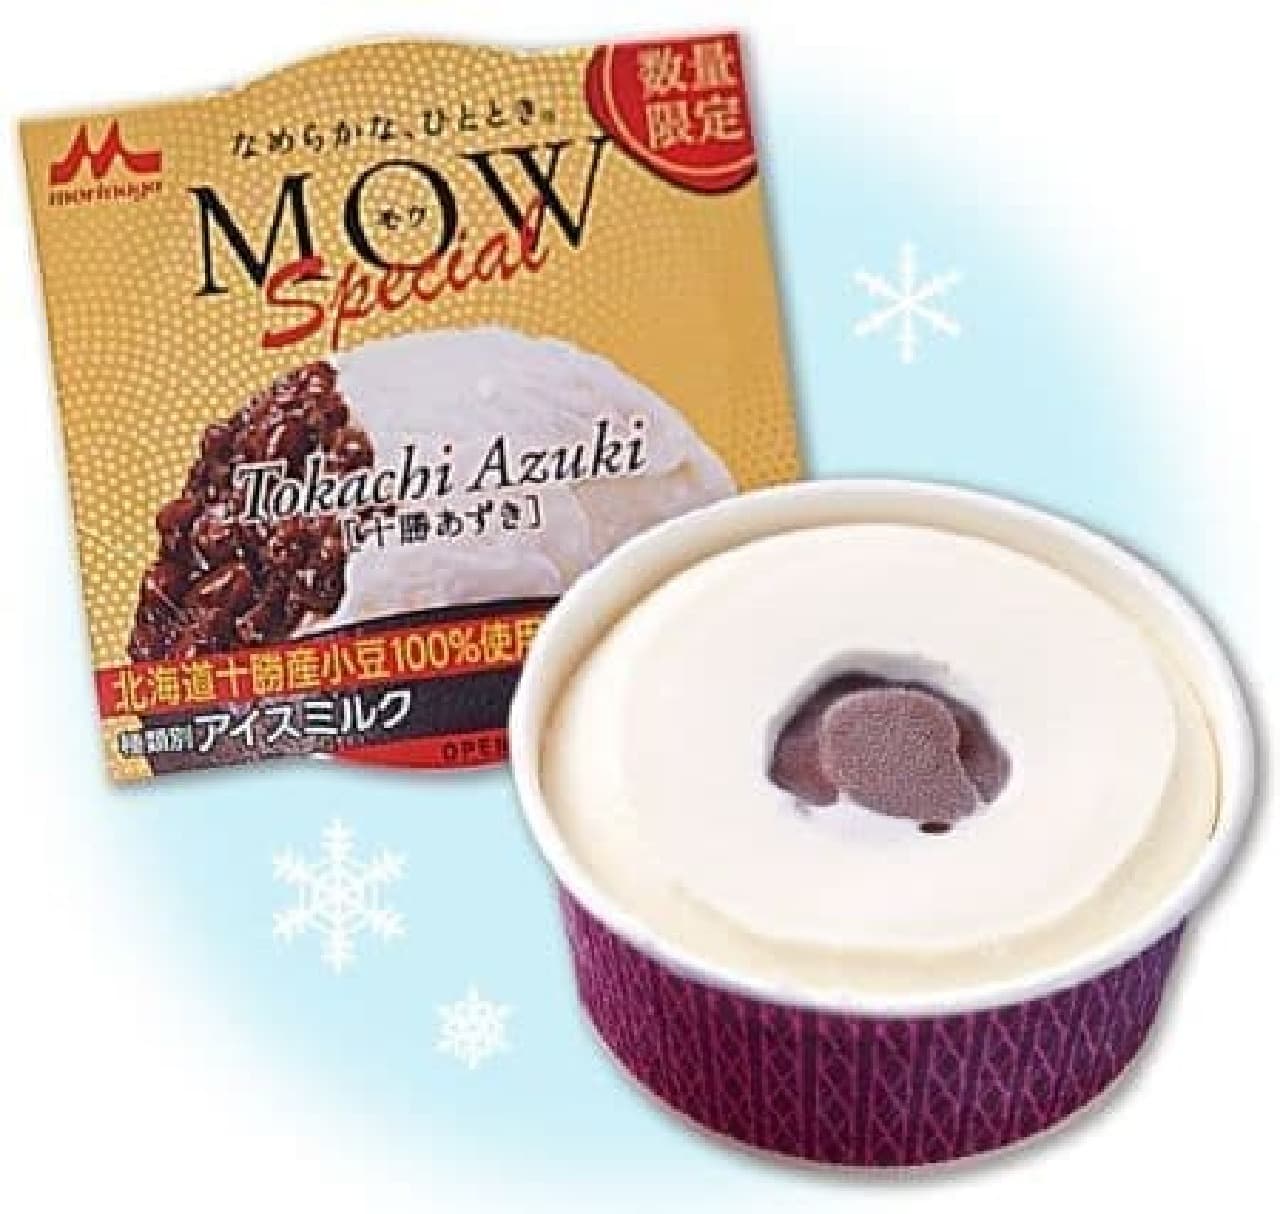 7-ELEVEN "MOW Special Tokachi Azuki"